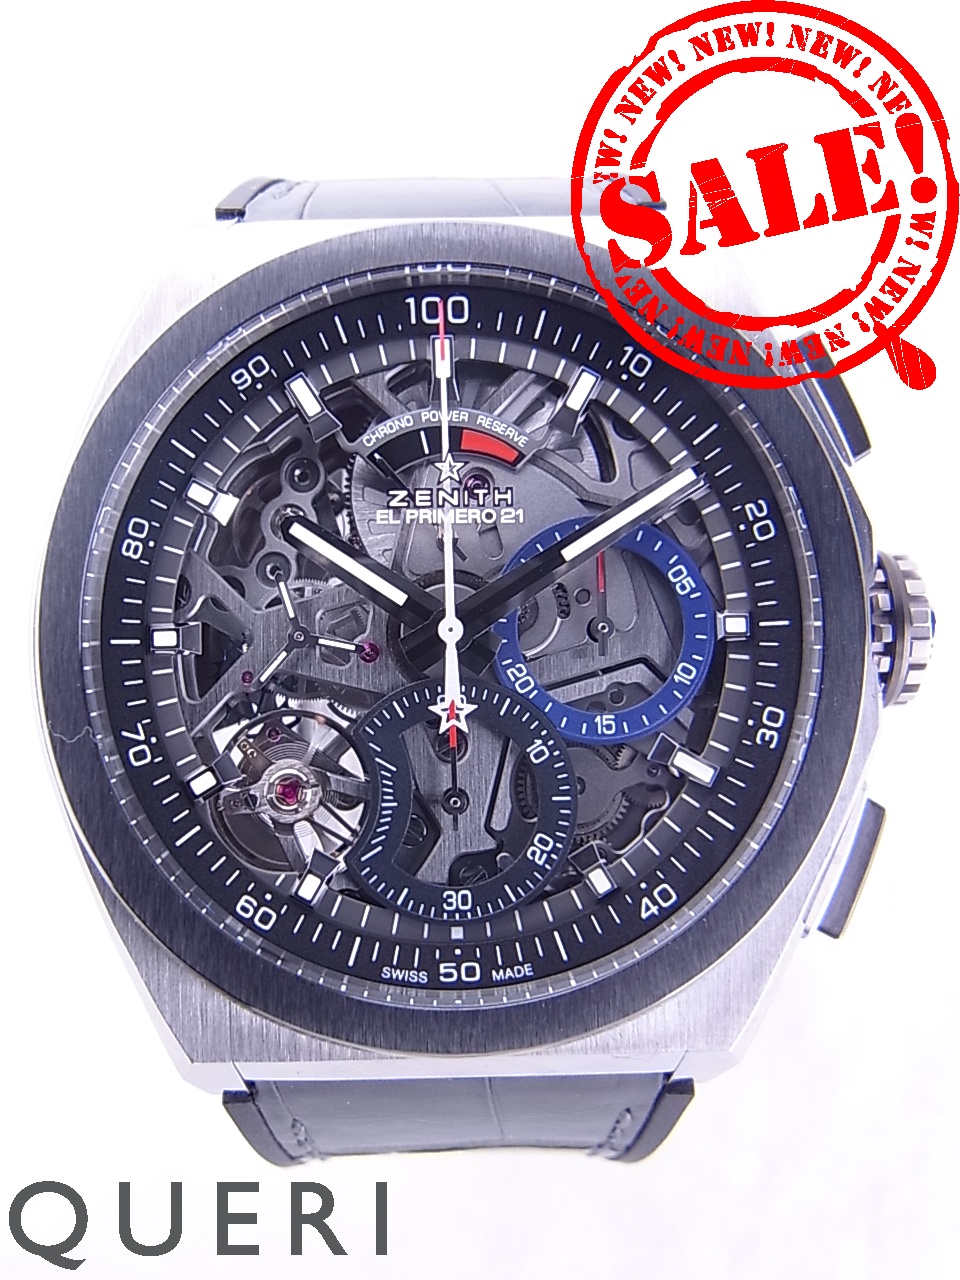 ゼニス(zenith)時計通販・販売|新品 中古－ブランド時計販売のクエリ